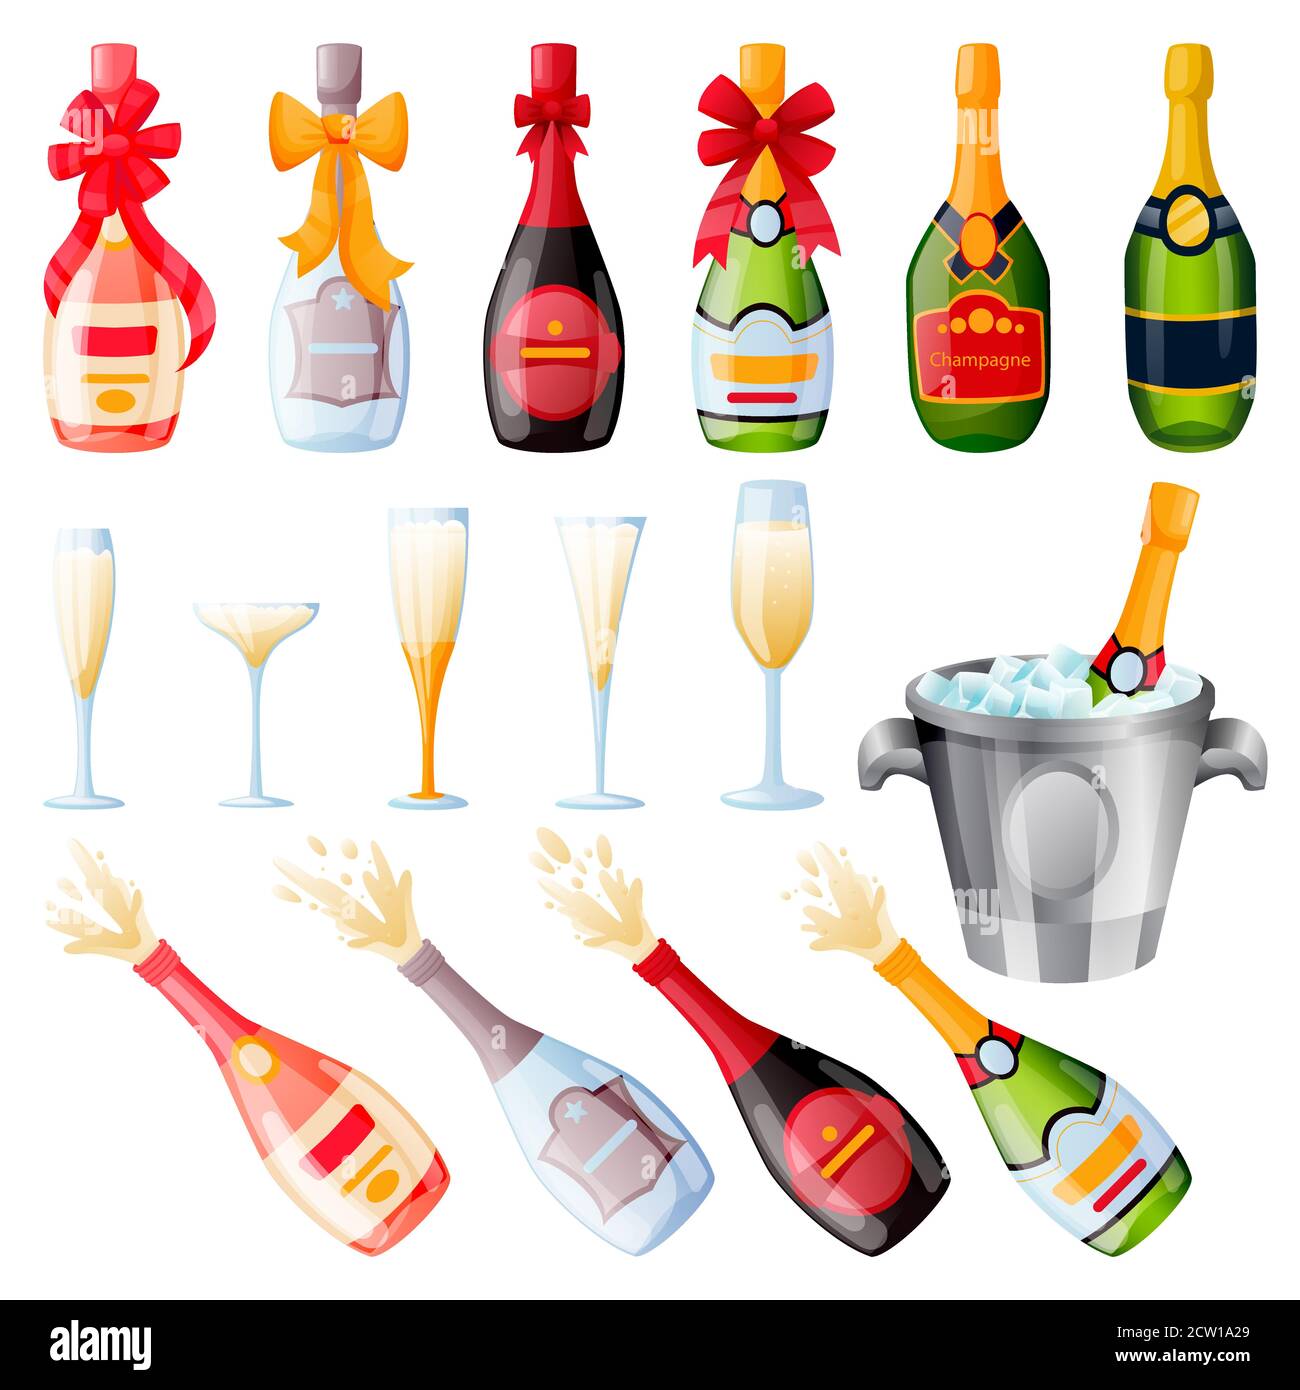 Botellas De Champán De Explosión Con Cintas De Lazo Y Juego De Vasos Ilustración De Dibujos 4293